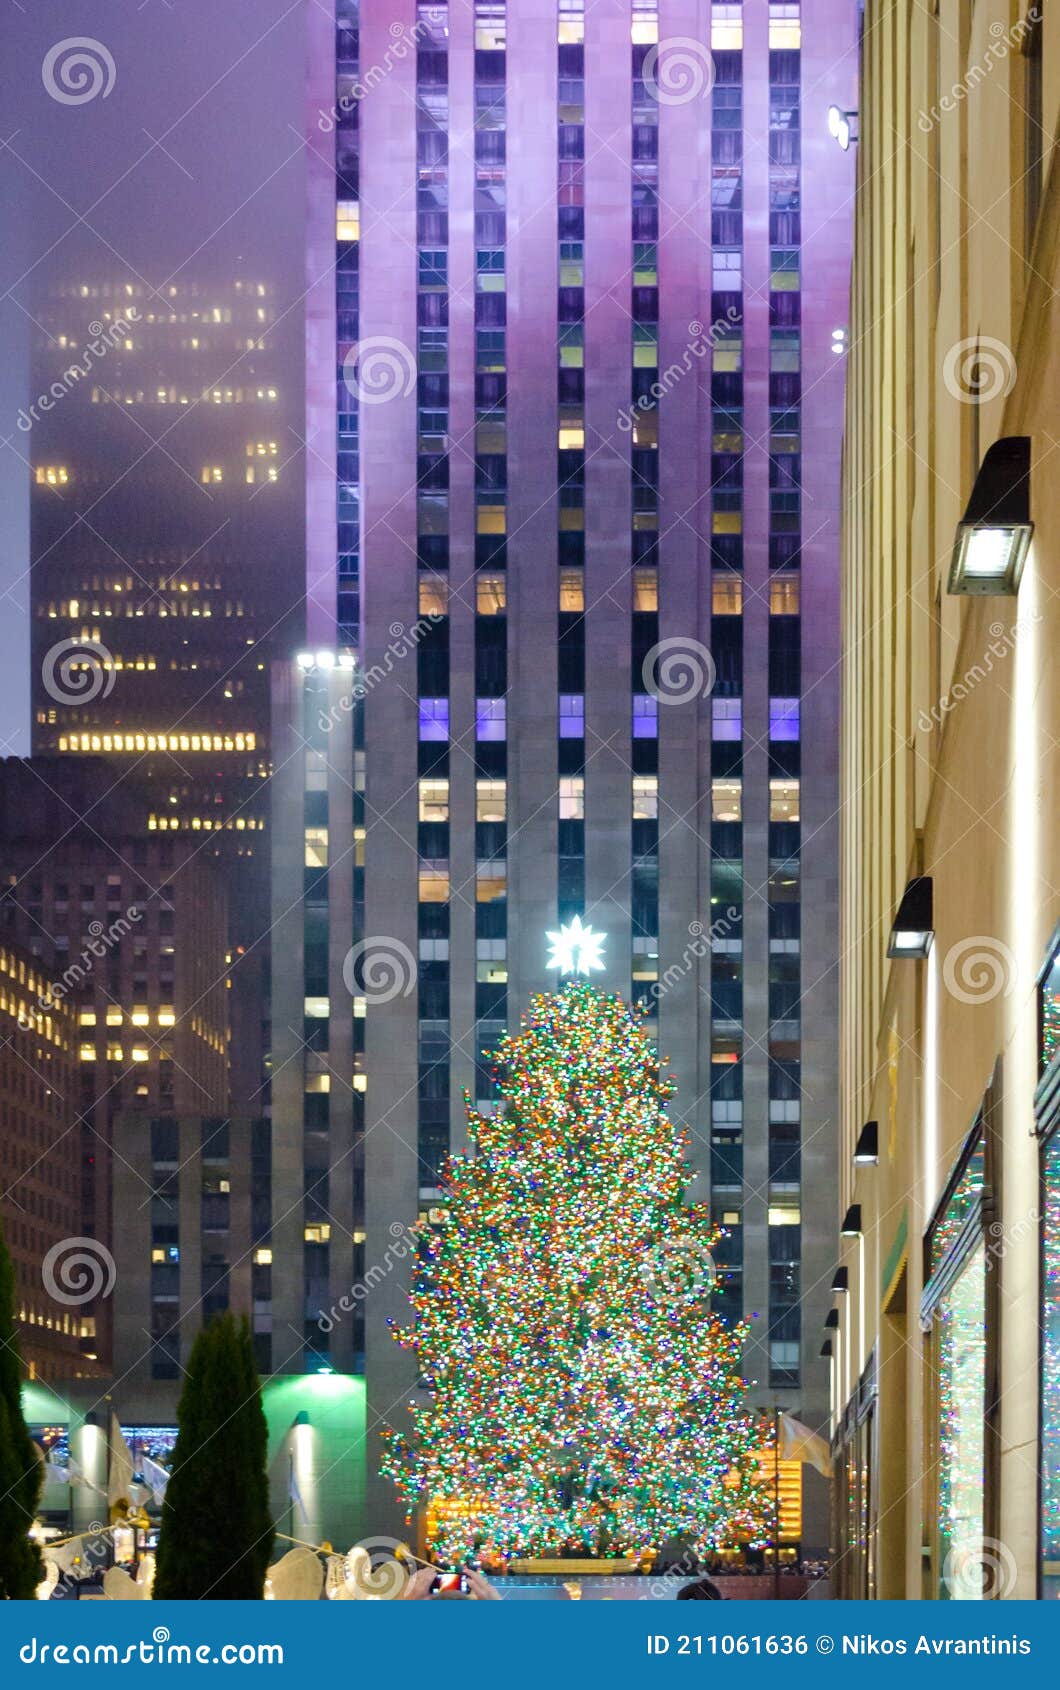 Nếu bạn muốn tìm kiếm một cây thông Giáng sinh lớn nhất ở Manhattan, hãy cùng xem ảnh kiến trúc được trang trí đẹp mắt này. Ánh đèn và bóng cùng những vật trang trí làm cho cây thông trở nên đặc biệt và sánh vai cùng những khu vực nổi tiếng khác của thành phố Giáng sinh.